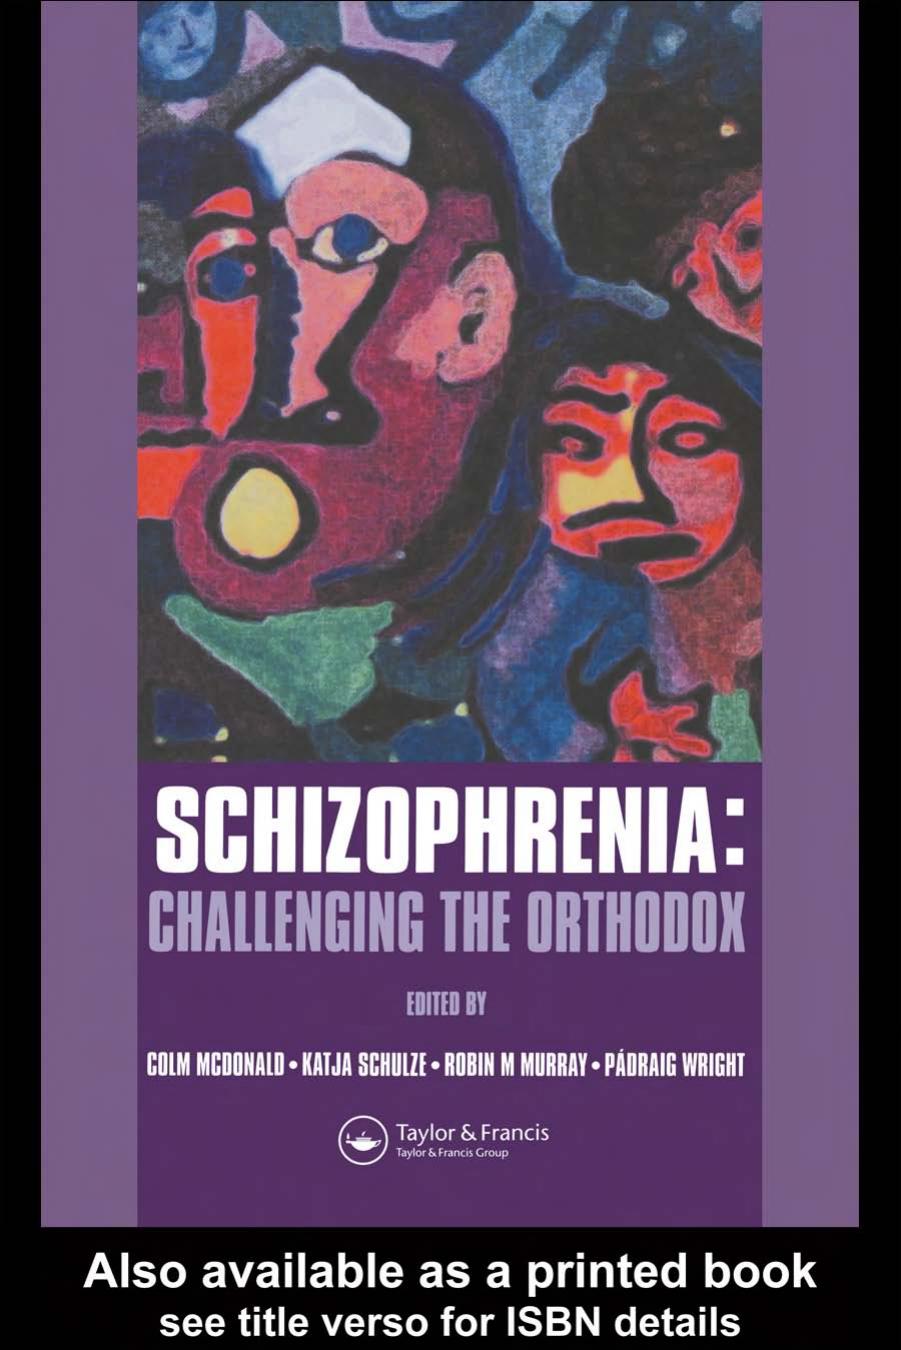 Schizophrenia: Challenging the Orthodox